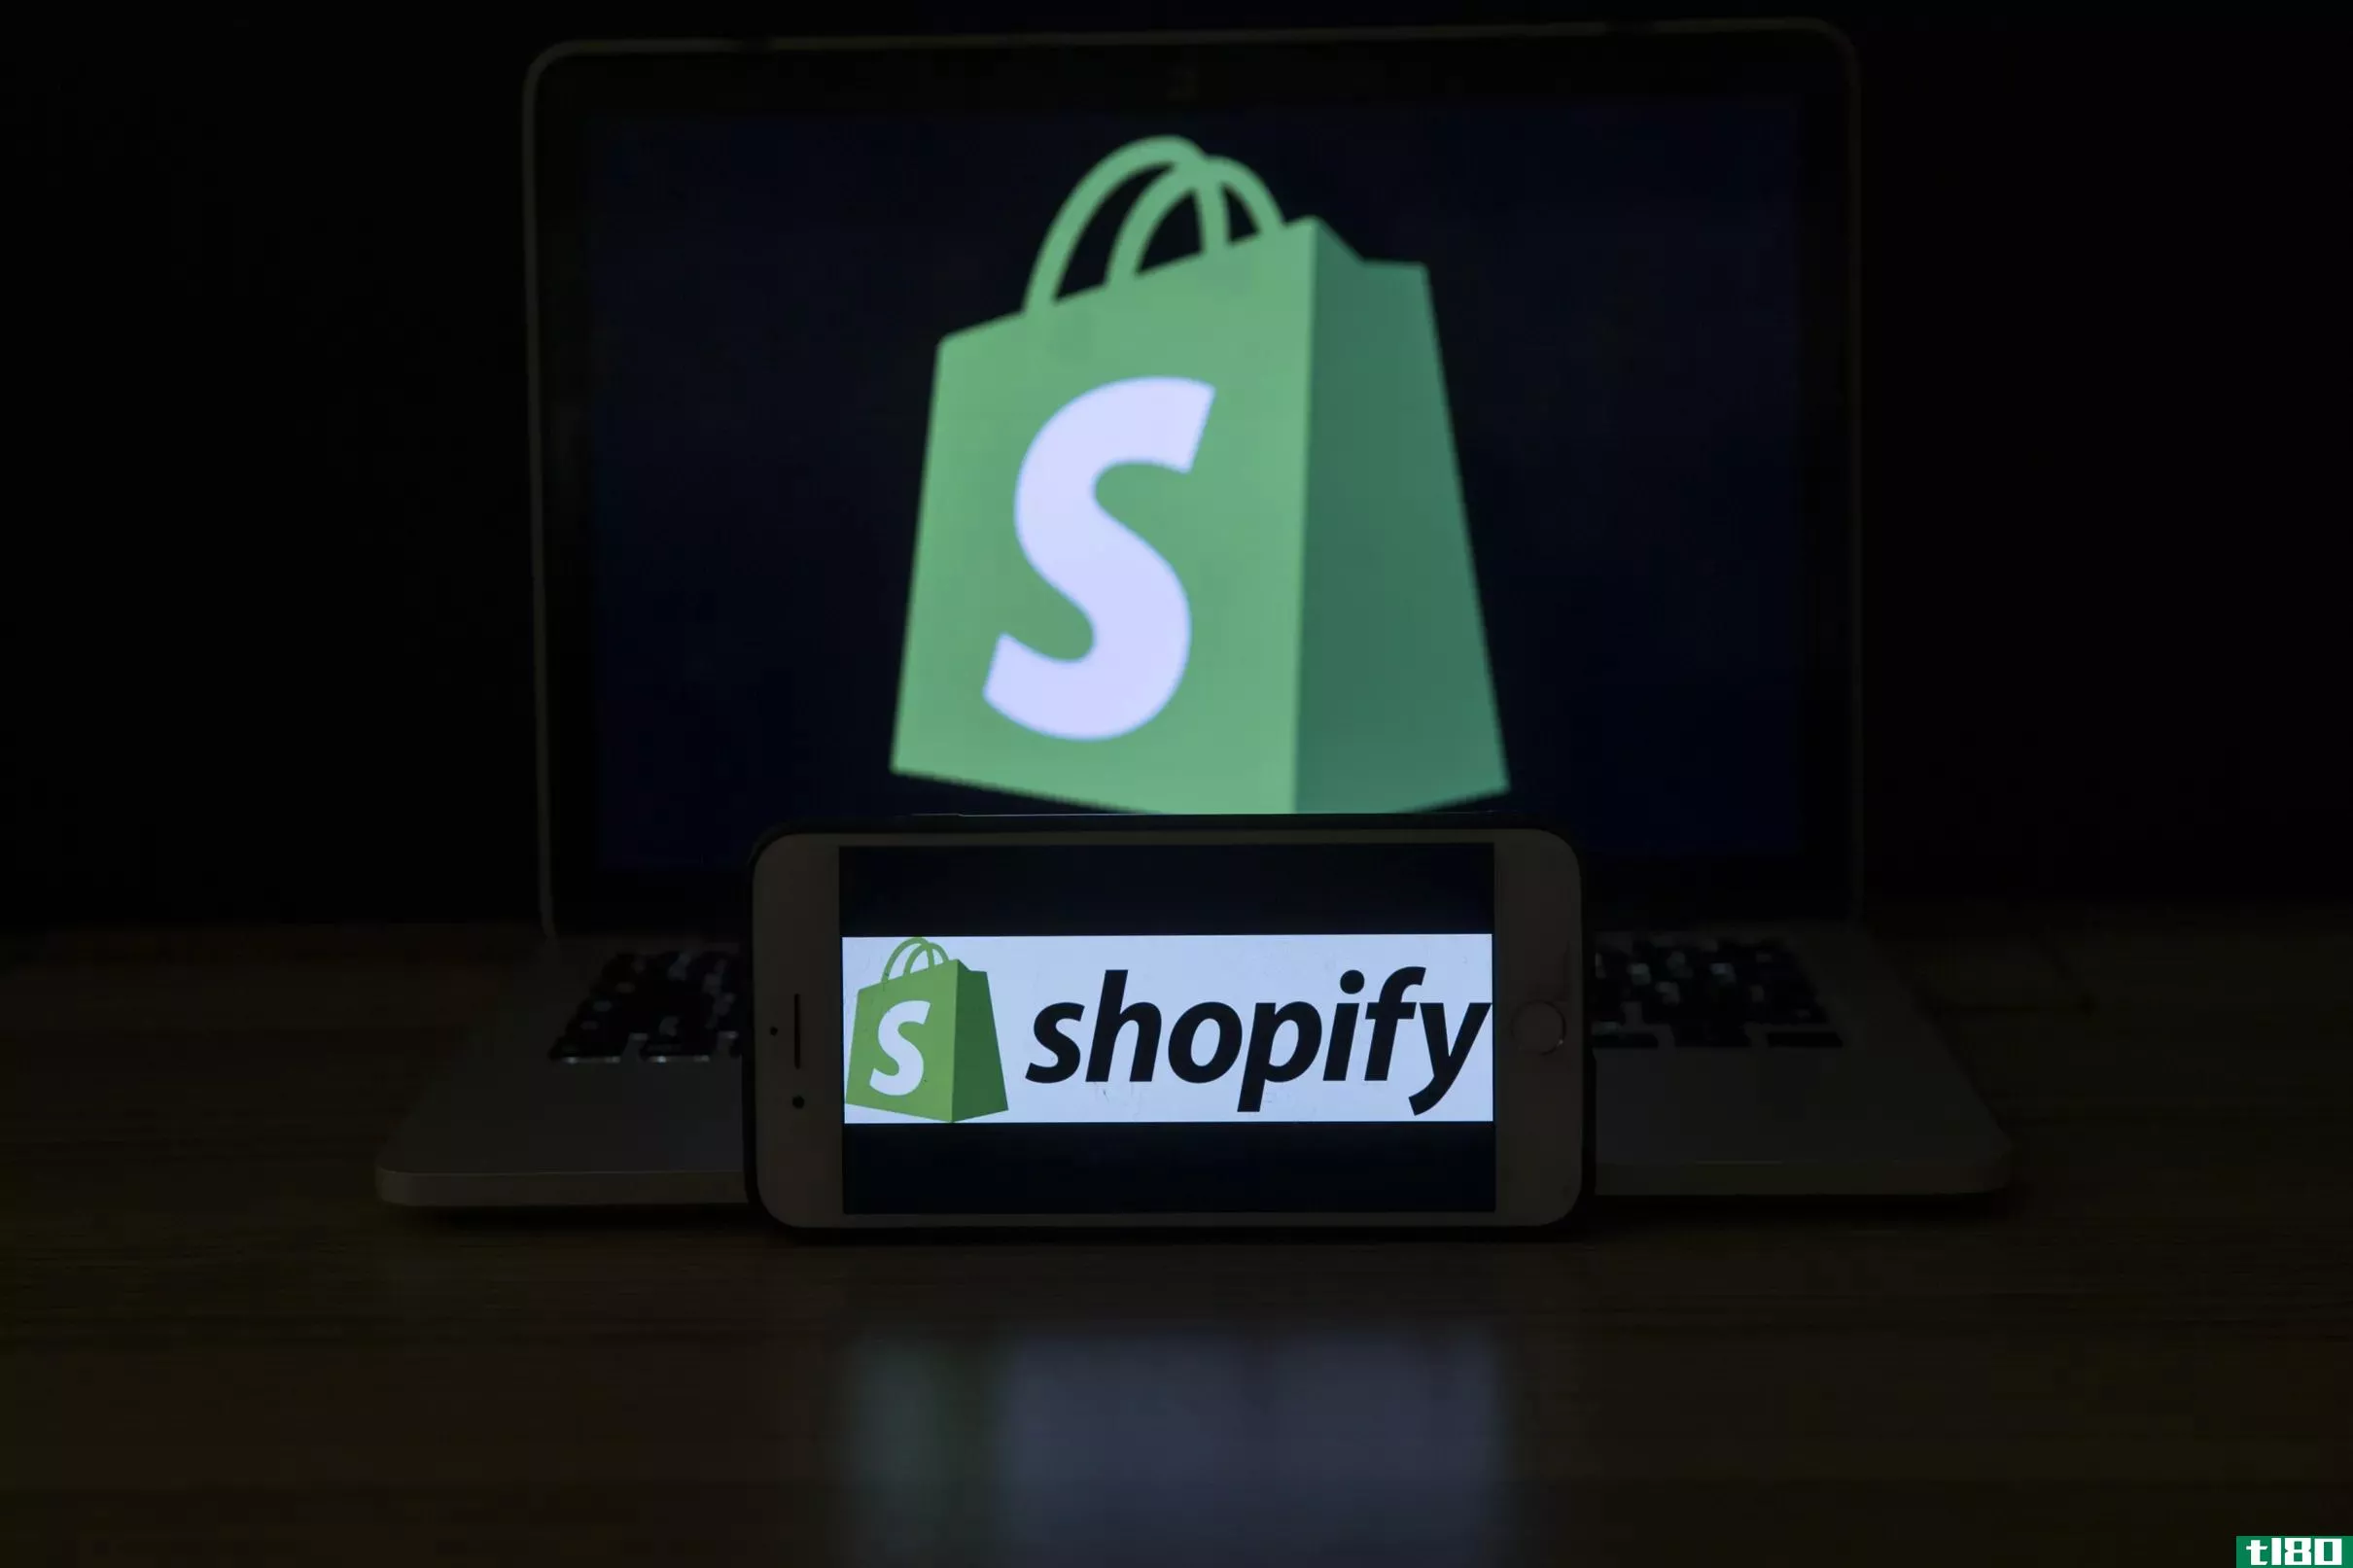 shopify收购特朗普竞选商店